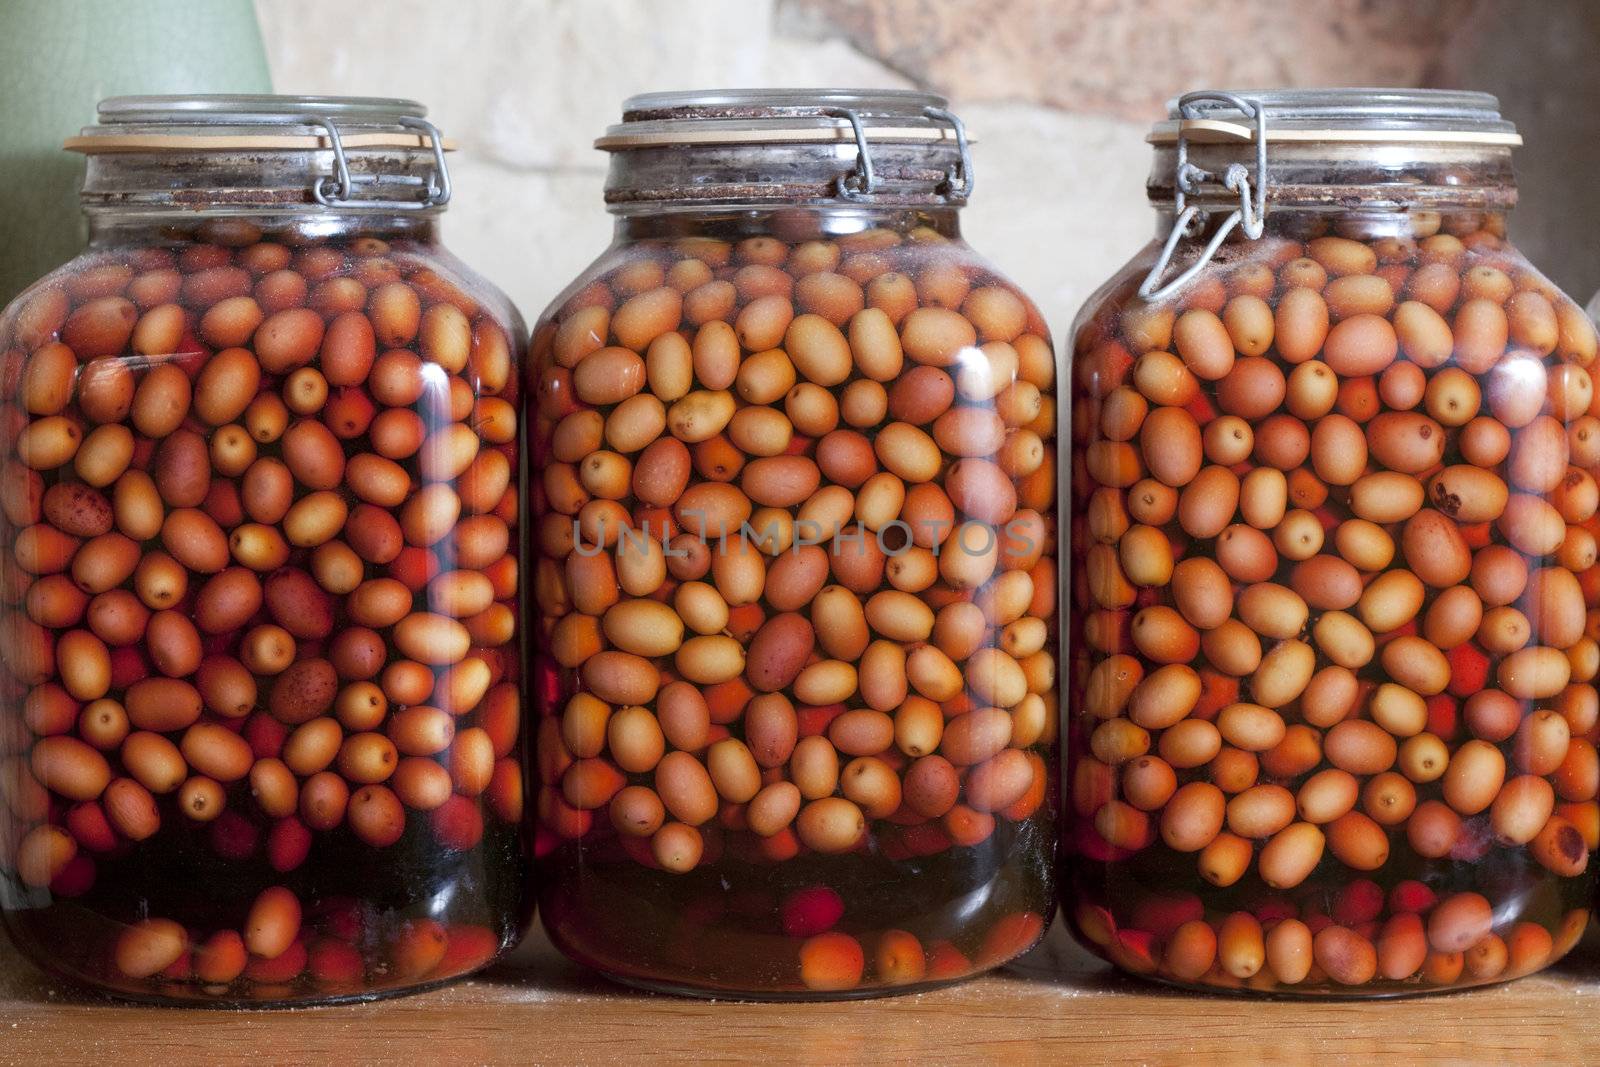 Olives stored in old jars